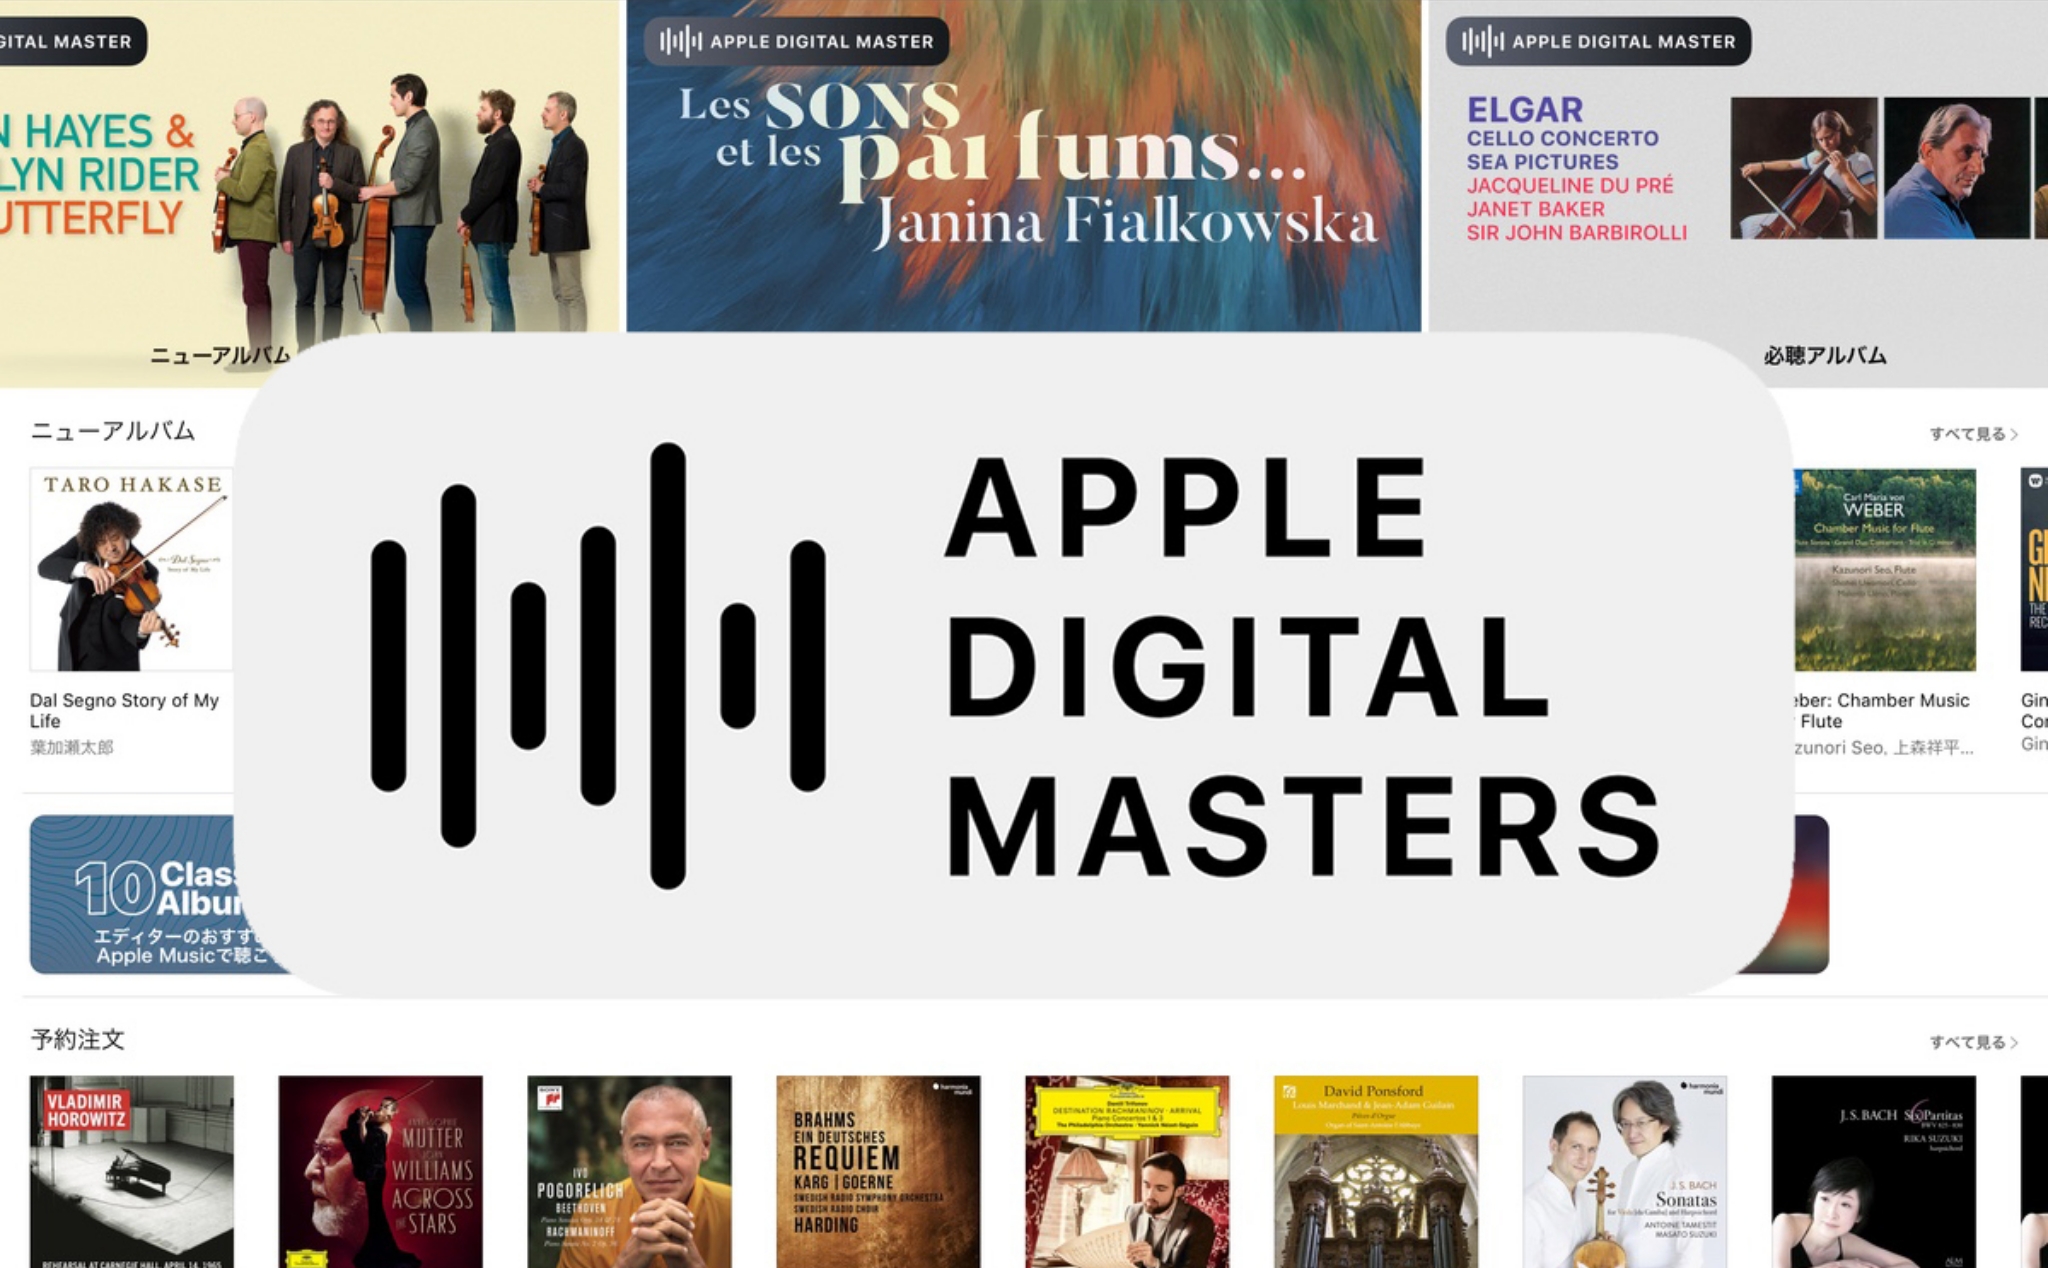 Sự thật về tiêu chuẩn nhạc cao cấp Apple Digital Master vừa được giới thiệu